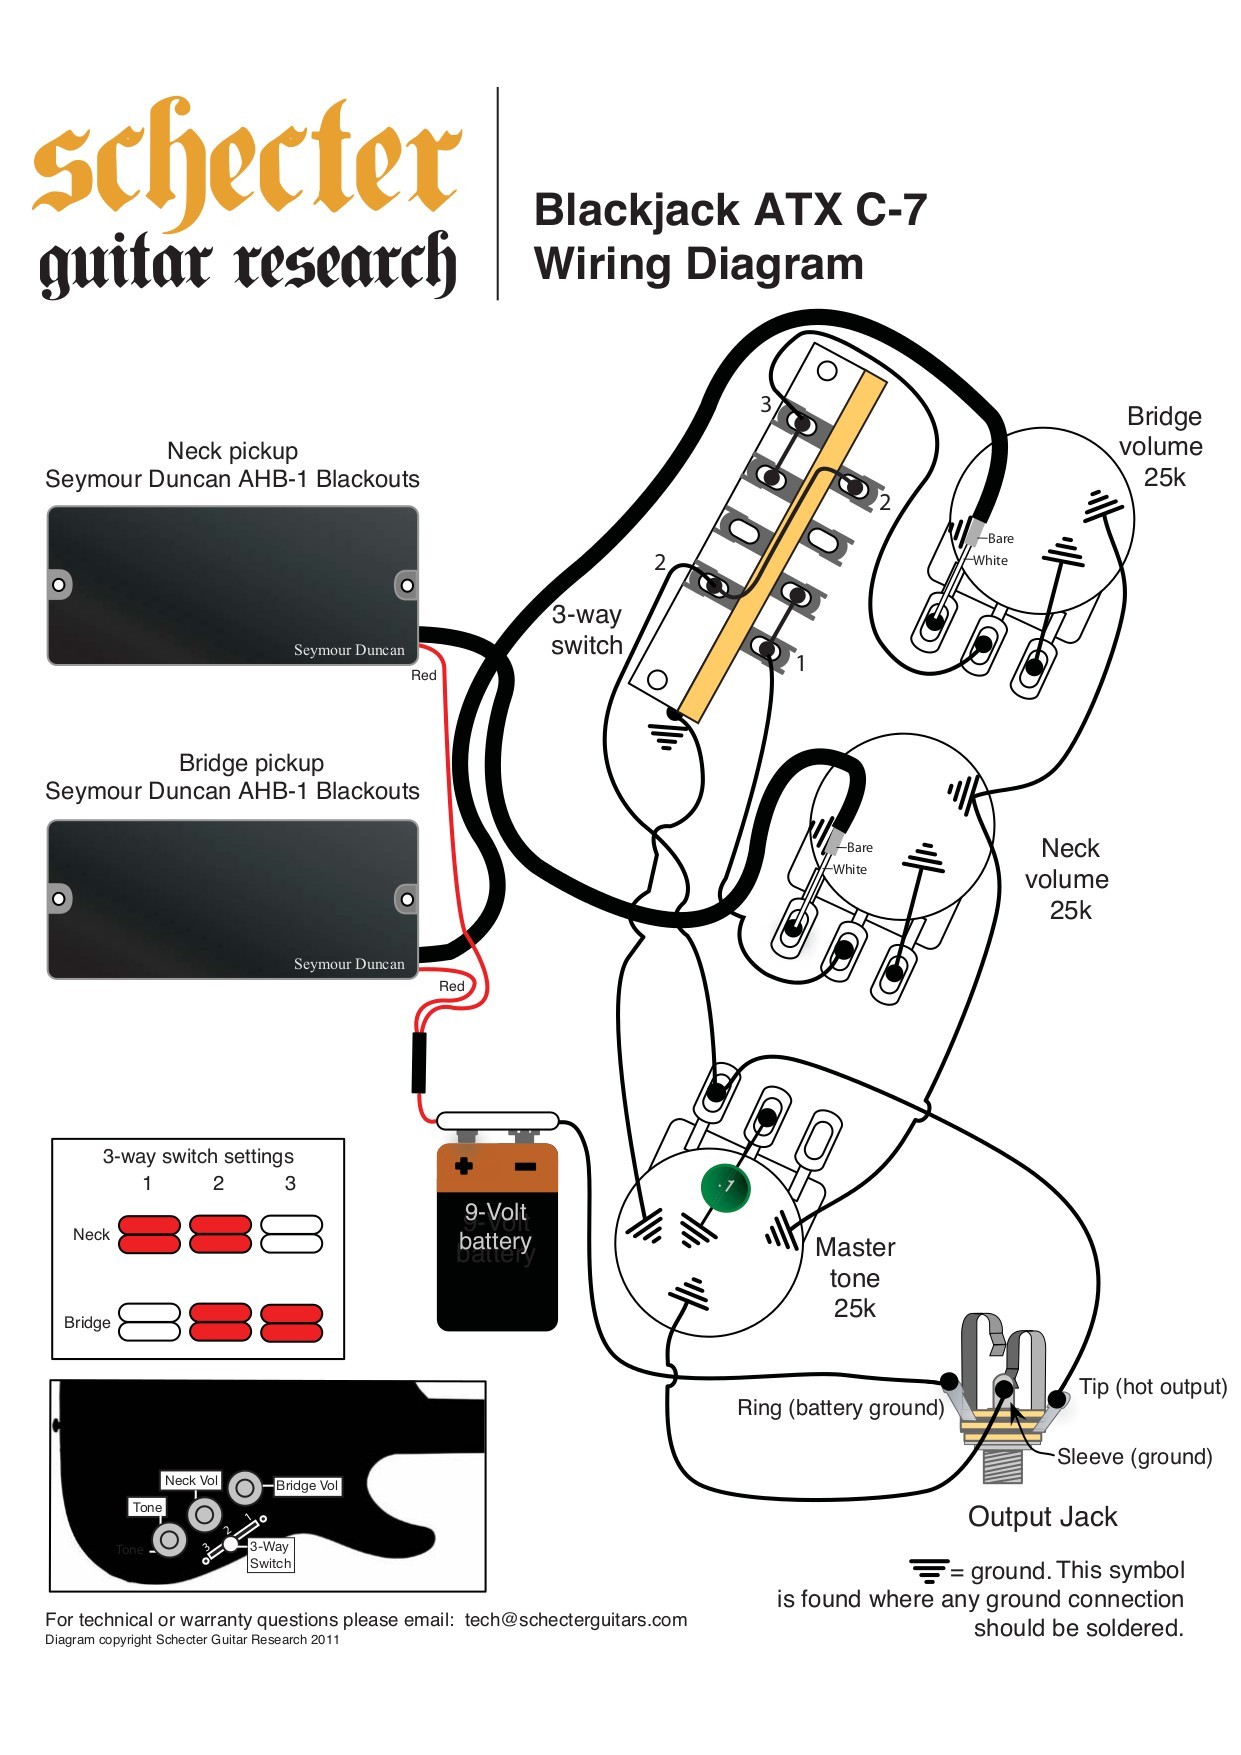 Schecter Guitar Wiring Diagram Fresh Beautiful Schecter Wiring Diagrams Gallery Electrical Diagram